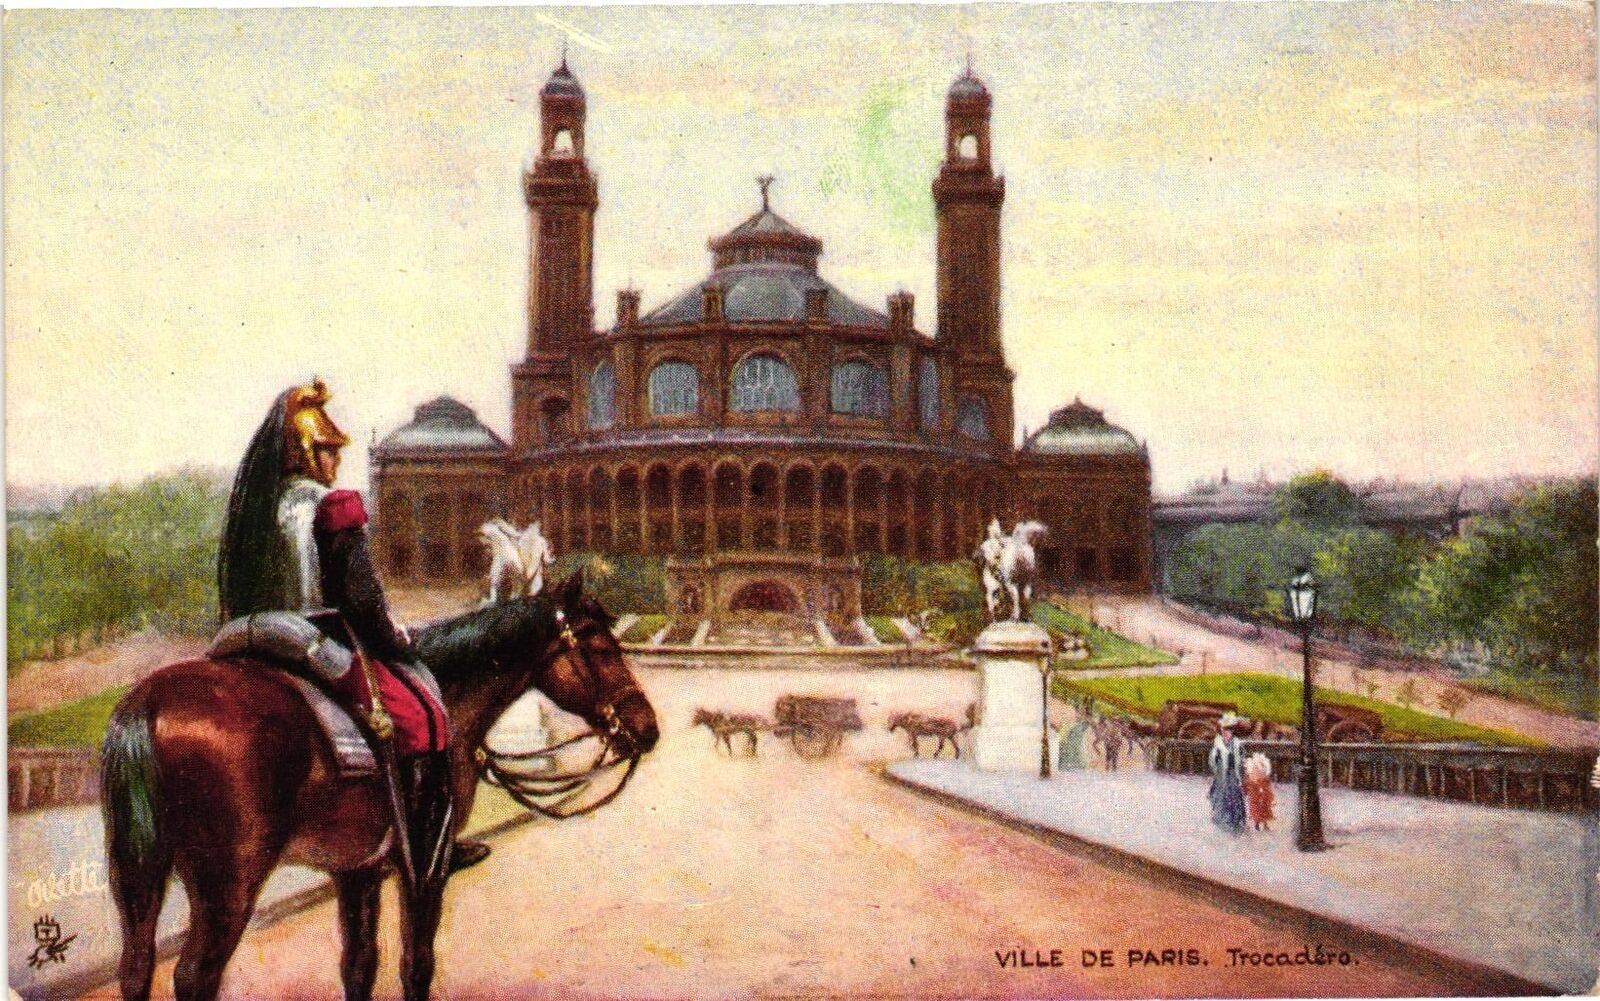 Vintage Postcard- VILLE DE PARIS Early 1900s